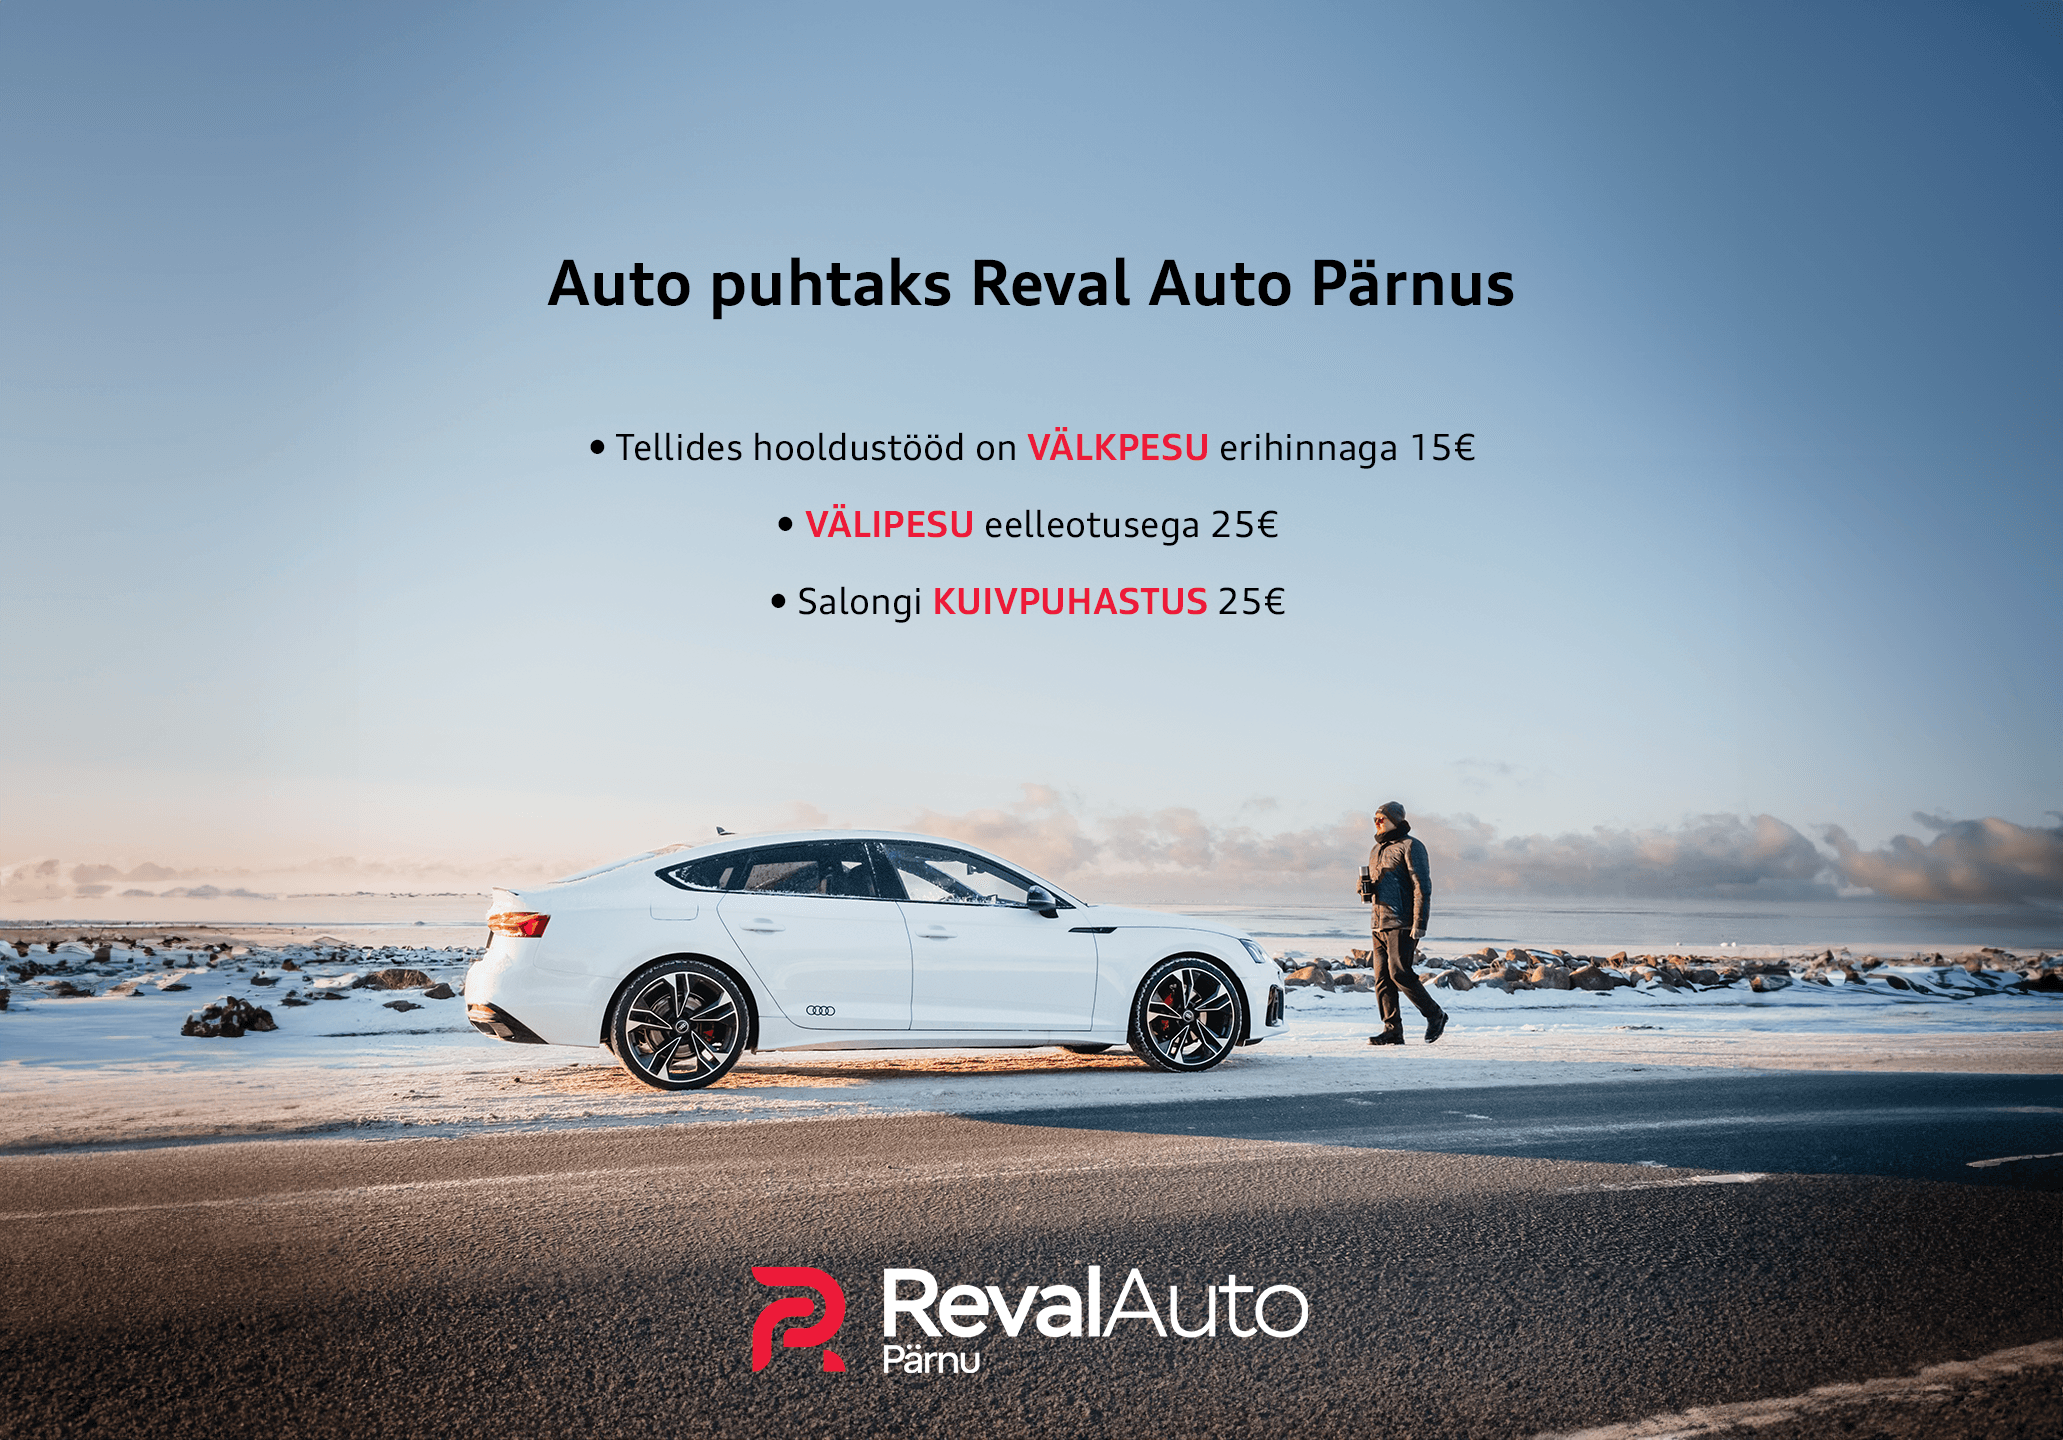 Auto puhtaks Reval Auto Pärnus